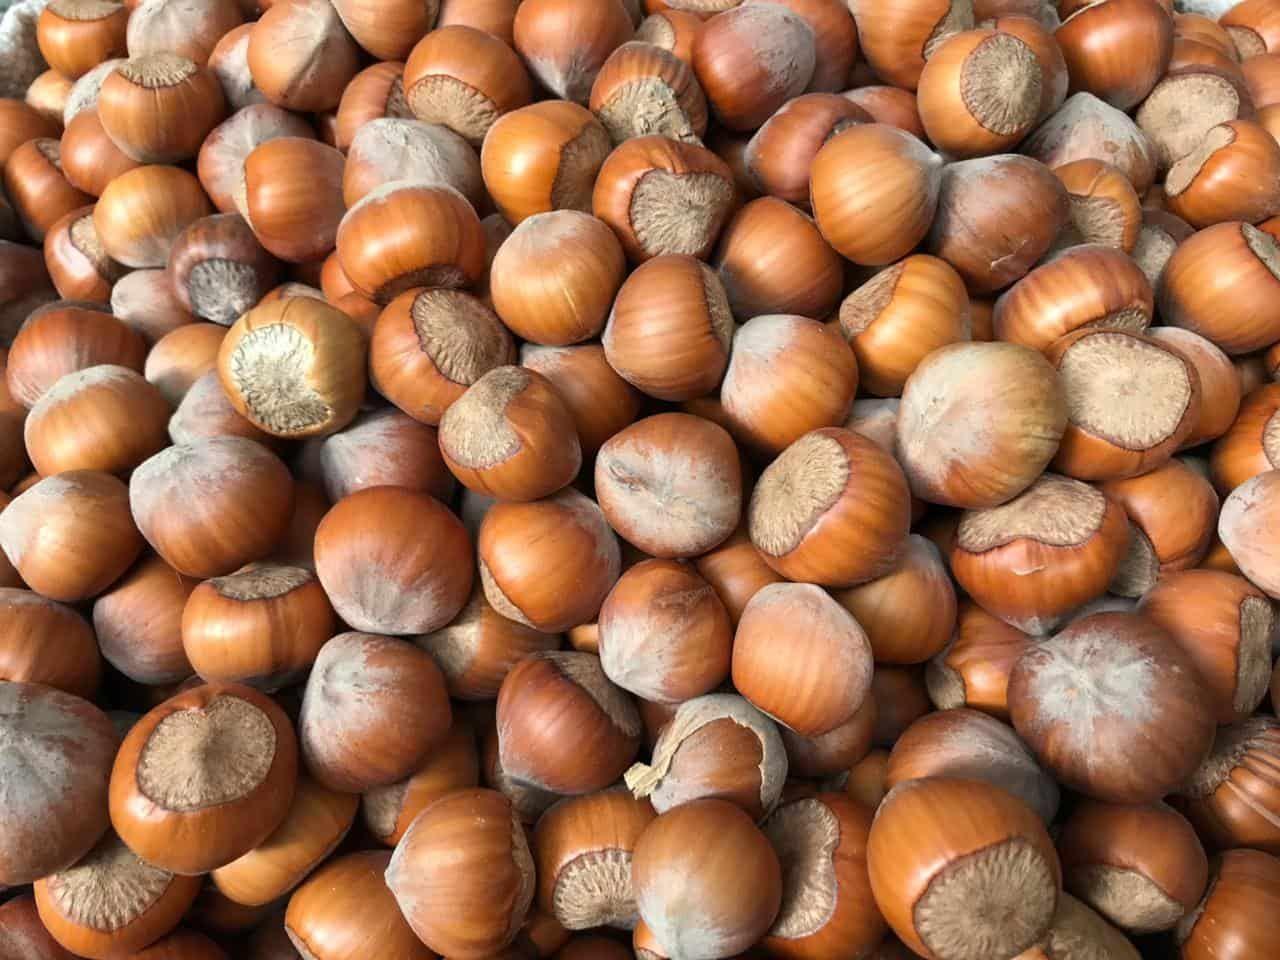 Azerbaijan to increase export of hazelnuts